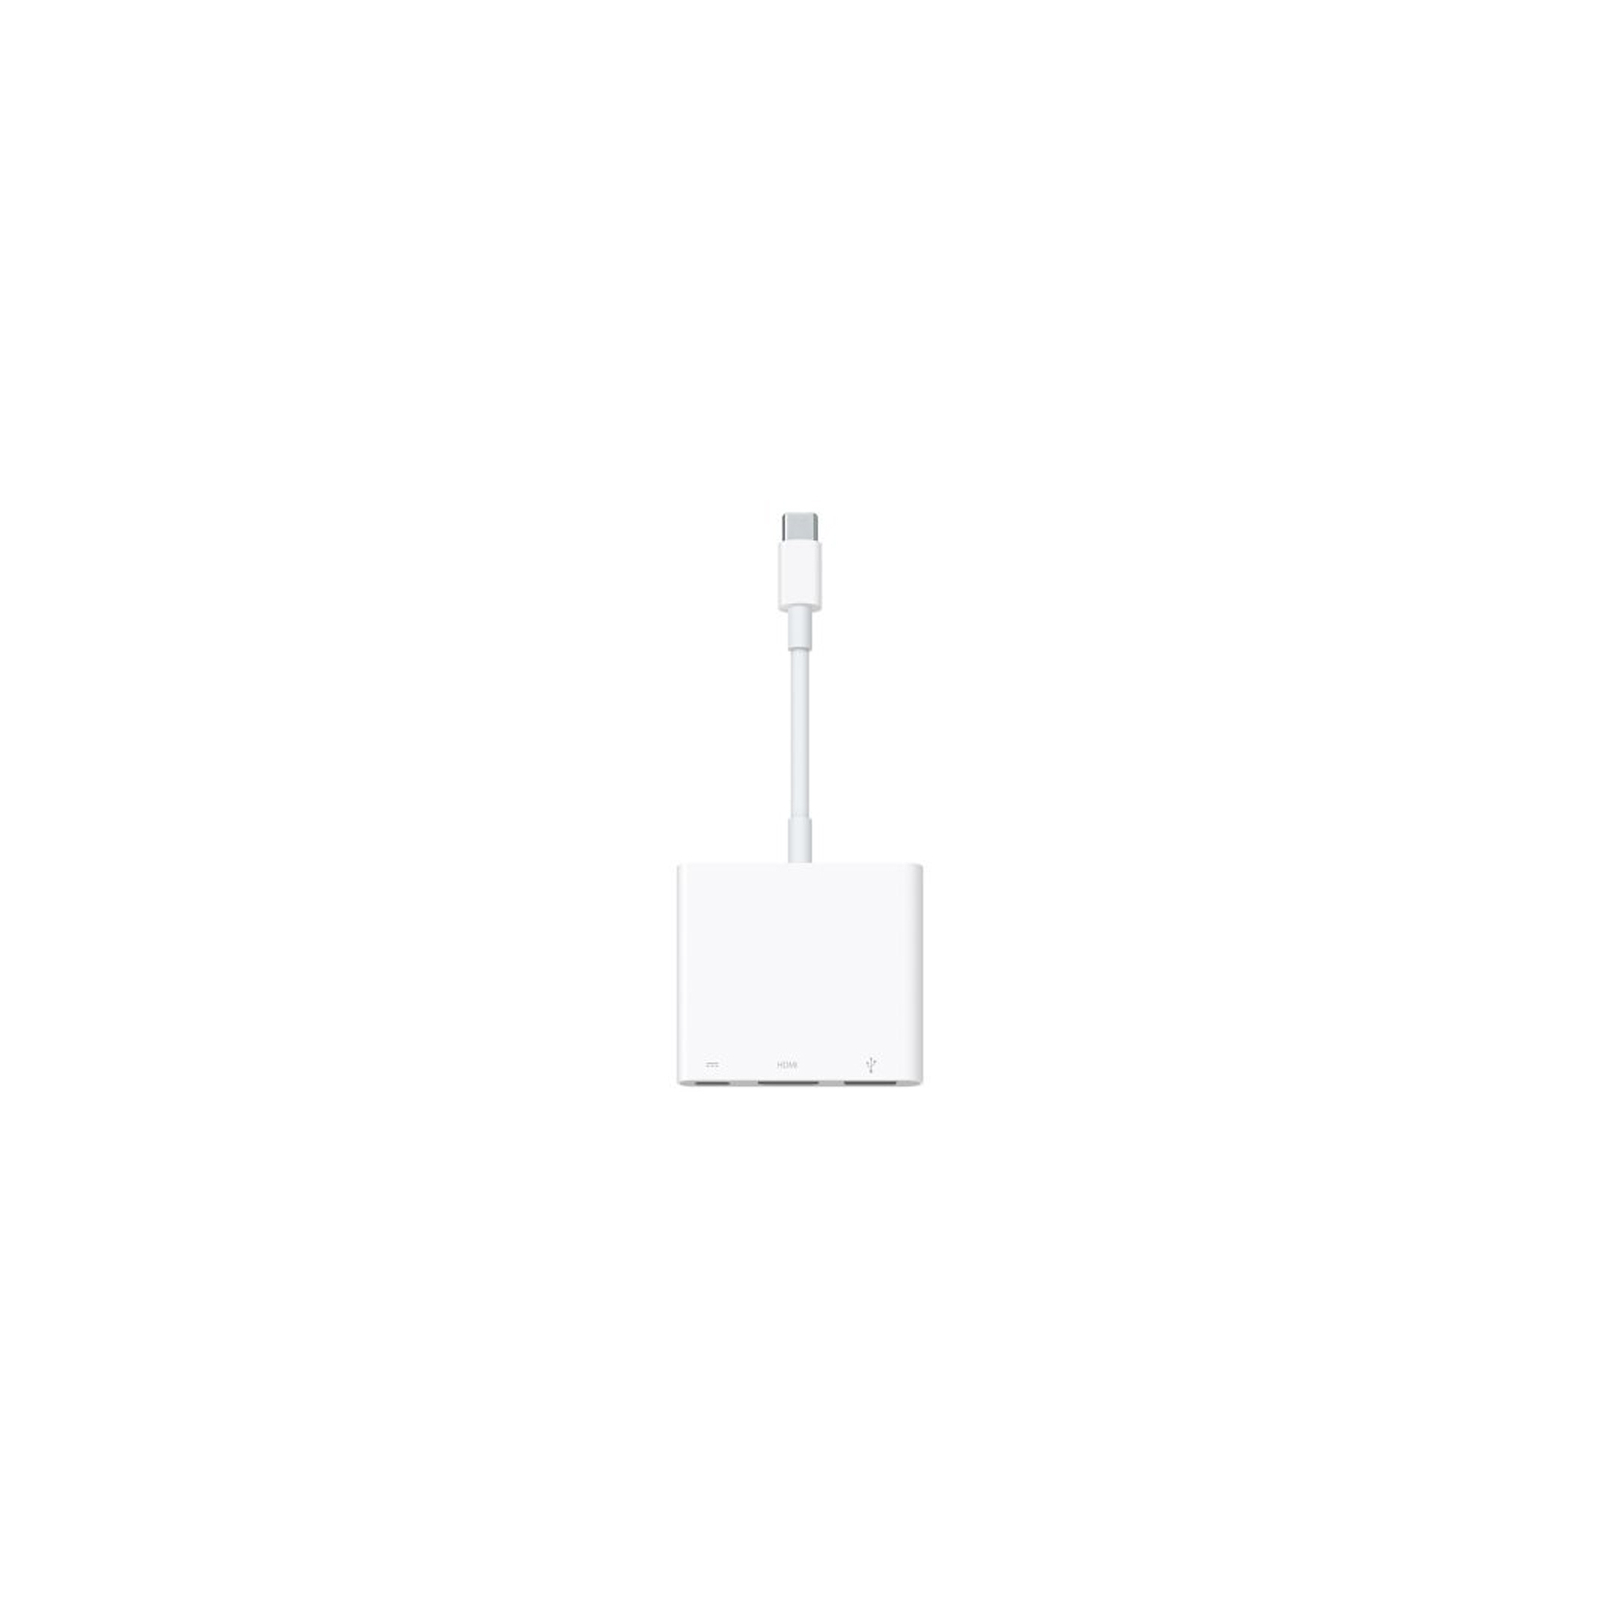 Порт-репликатор Apple USB-C to digital AV Multiport Adapter (MJ1K2ZM/A)